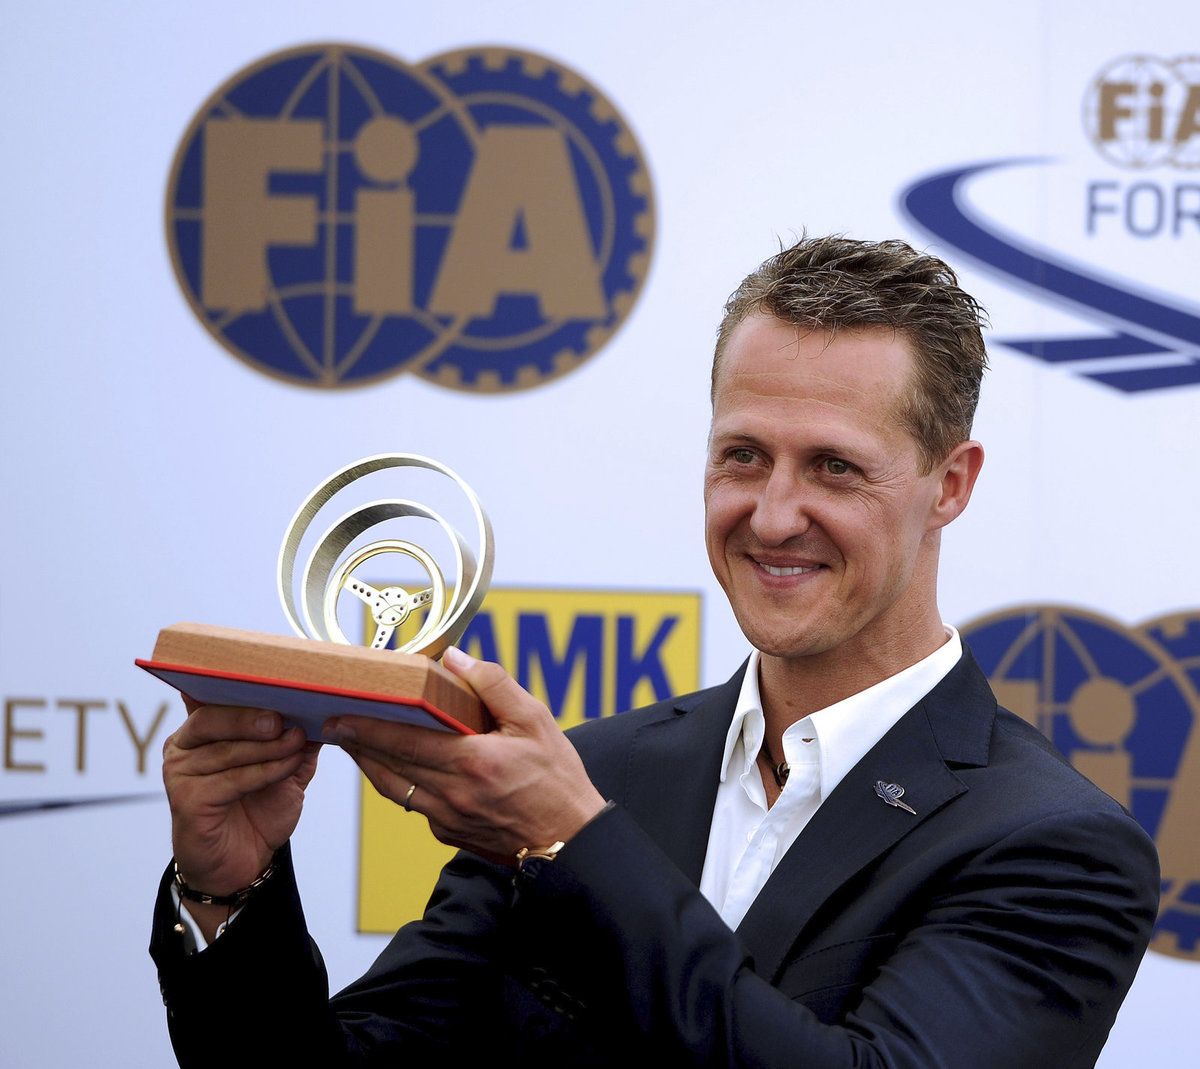 Ocenění. Před lety Michael Schumacher obdržel v Praze Zlatý volant.